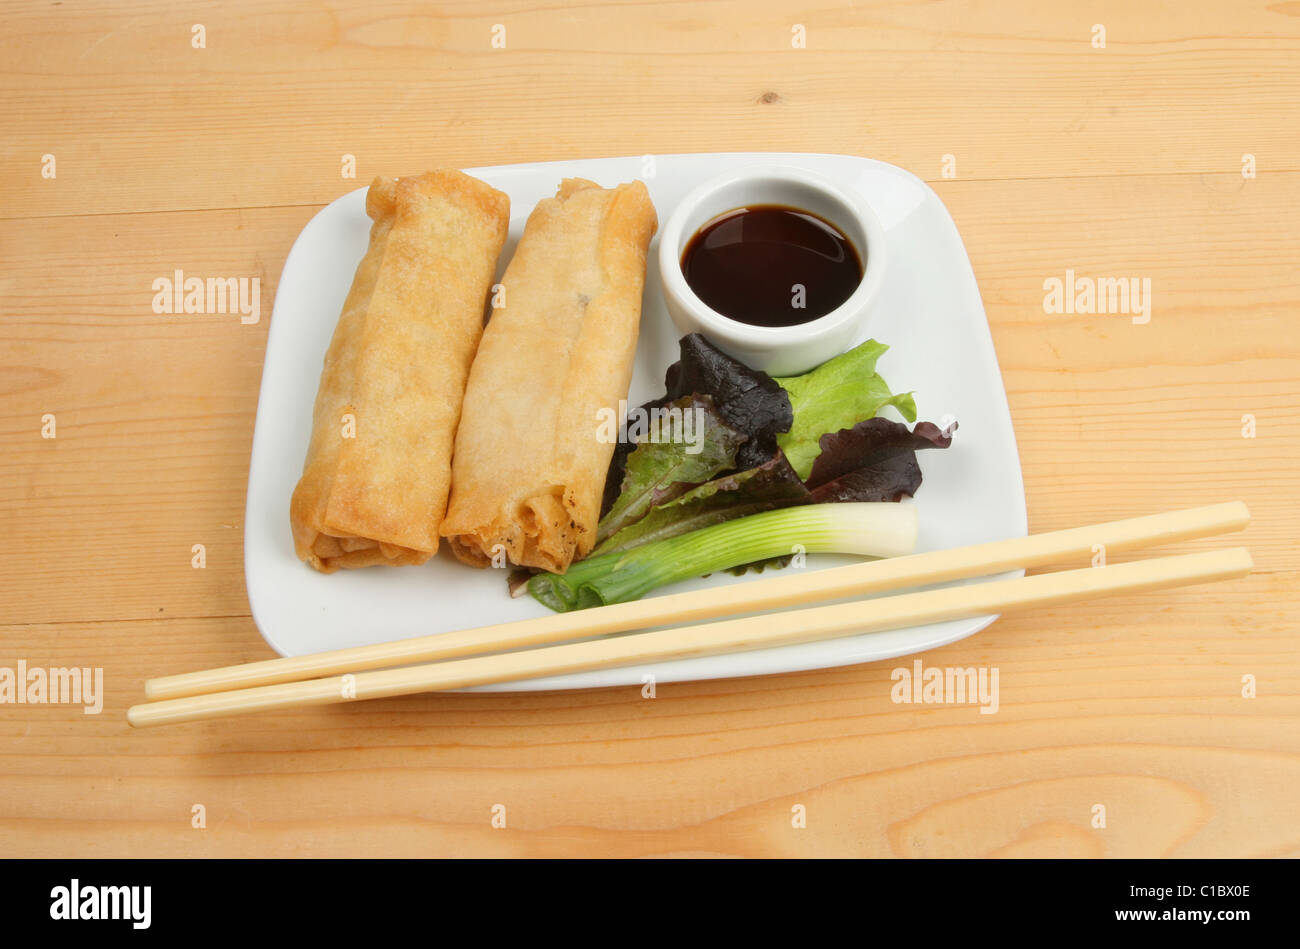 Chinese pancake rolls, salad garnish and chopsticks on a plate Stock Photo